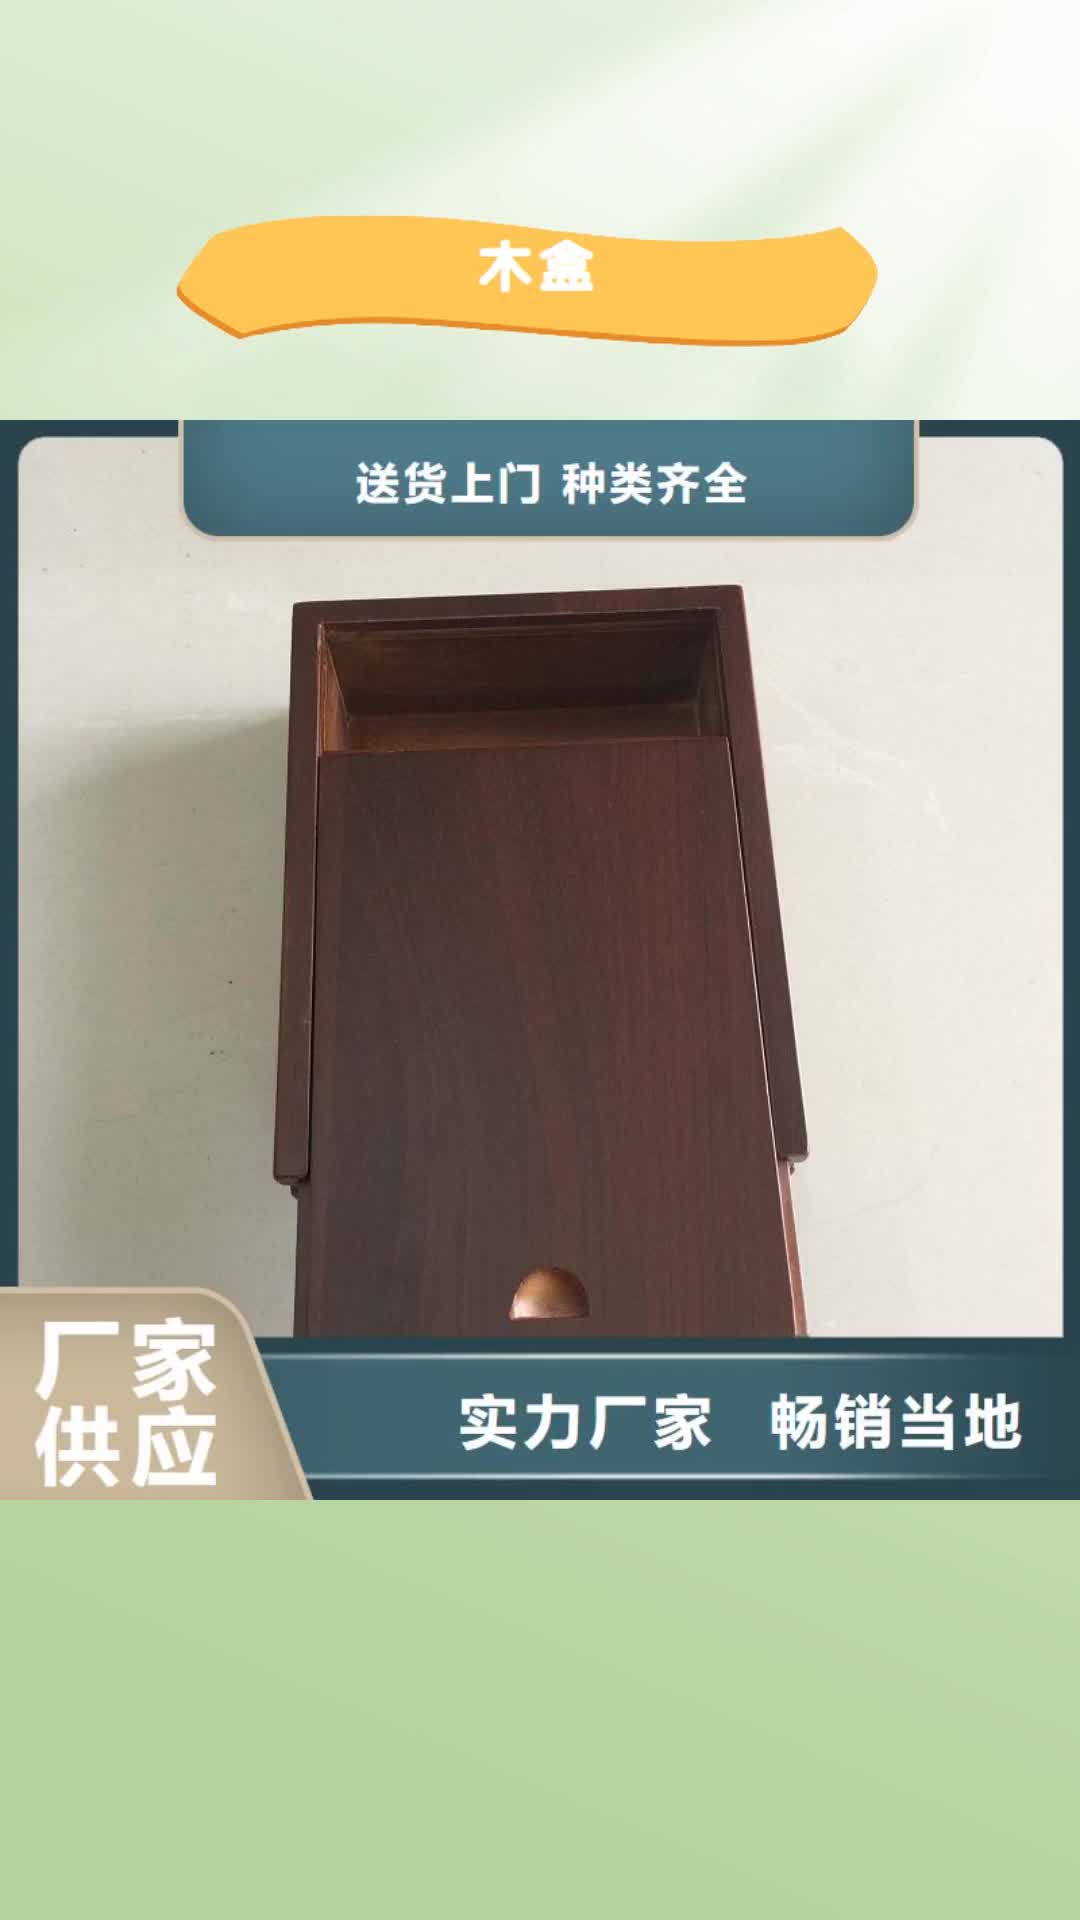 滁州 木盒,【防伪收藏】厂家定制